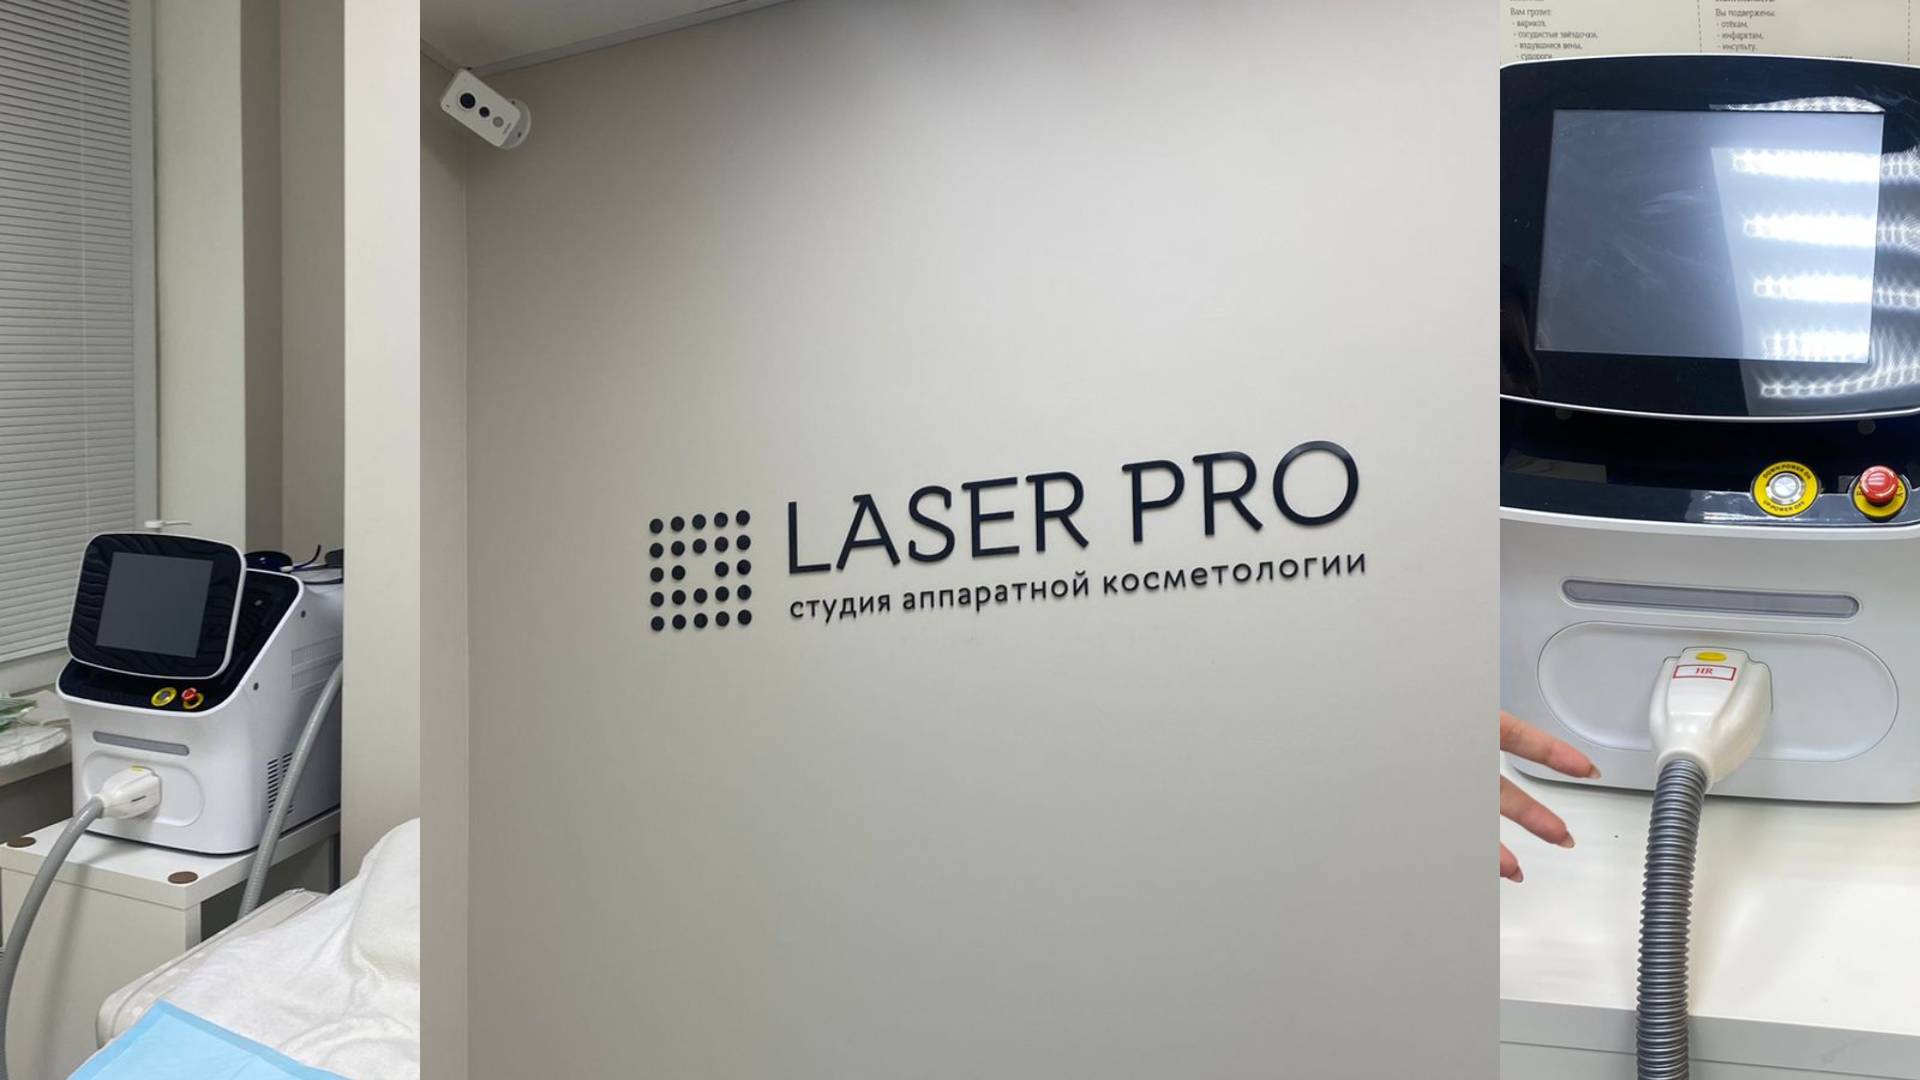 Лазерная эпиляция без мед. лицензии на нелицензированном оборудовании в салоне Laser Pro на Фурманова, 126